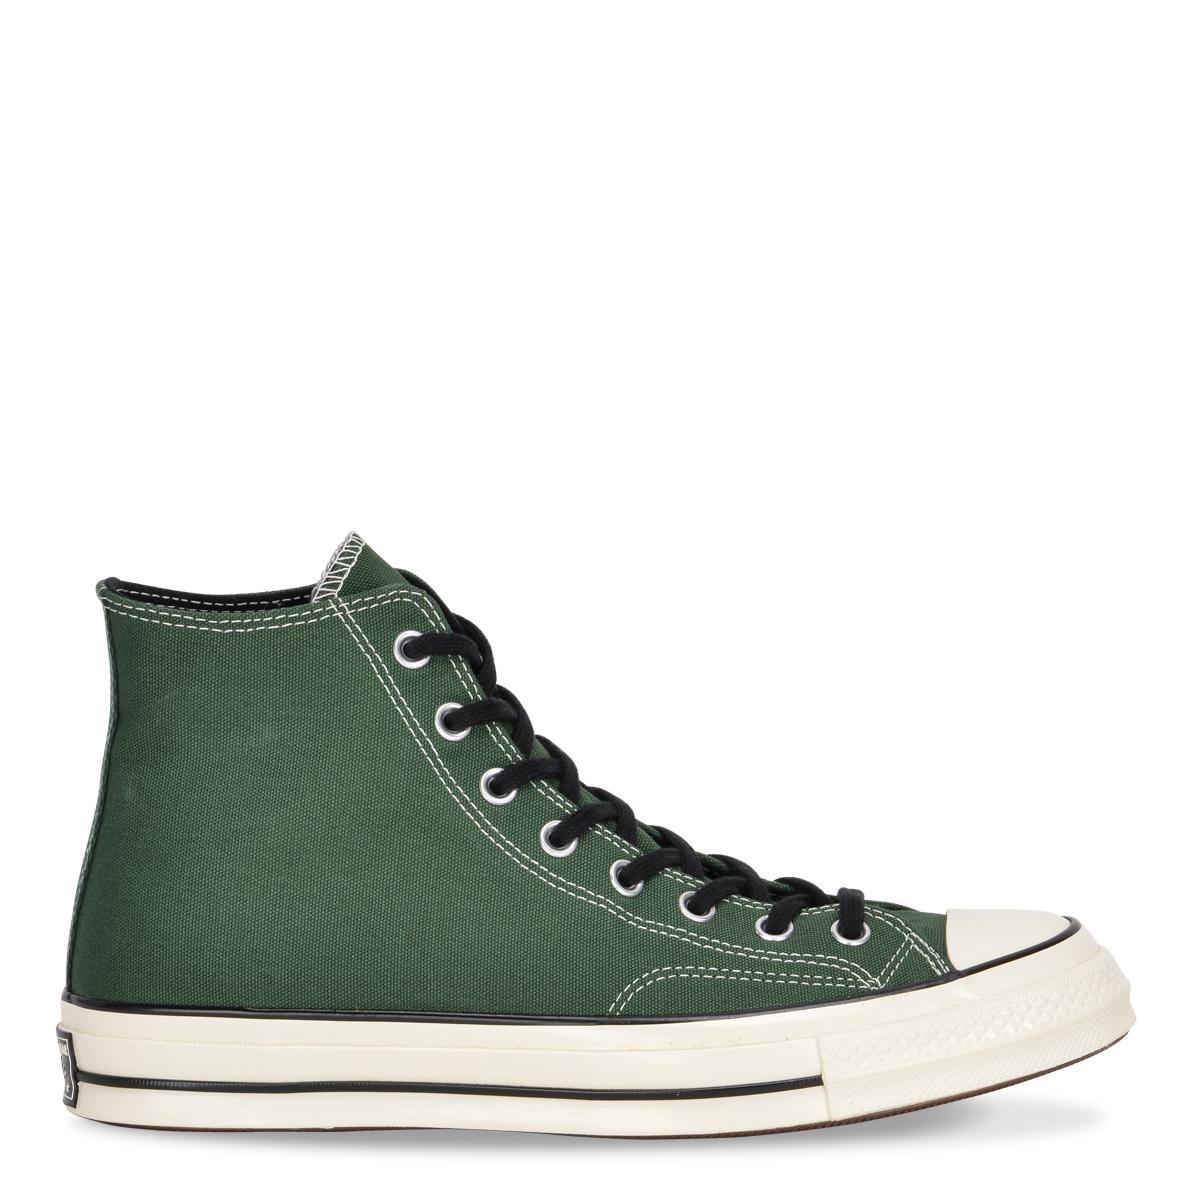 Converse Chuck 70 Dark Green High-top Sneaker for Men - Lyst